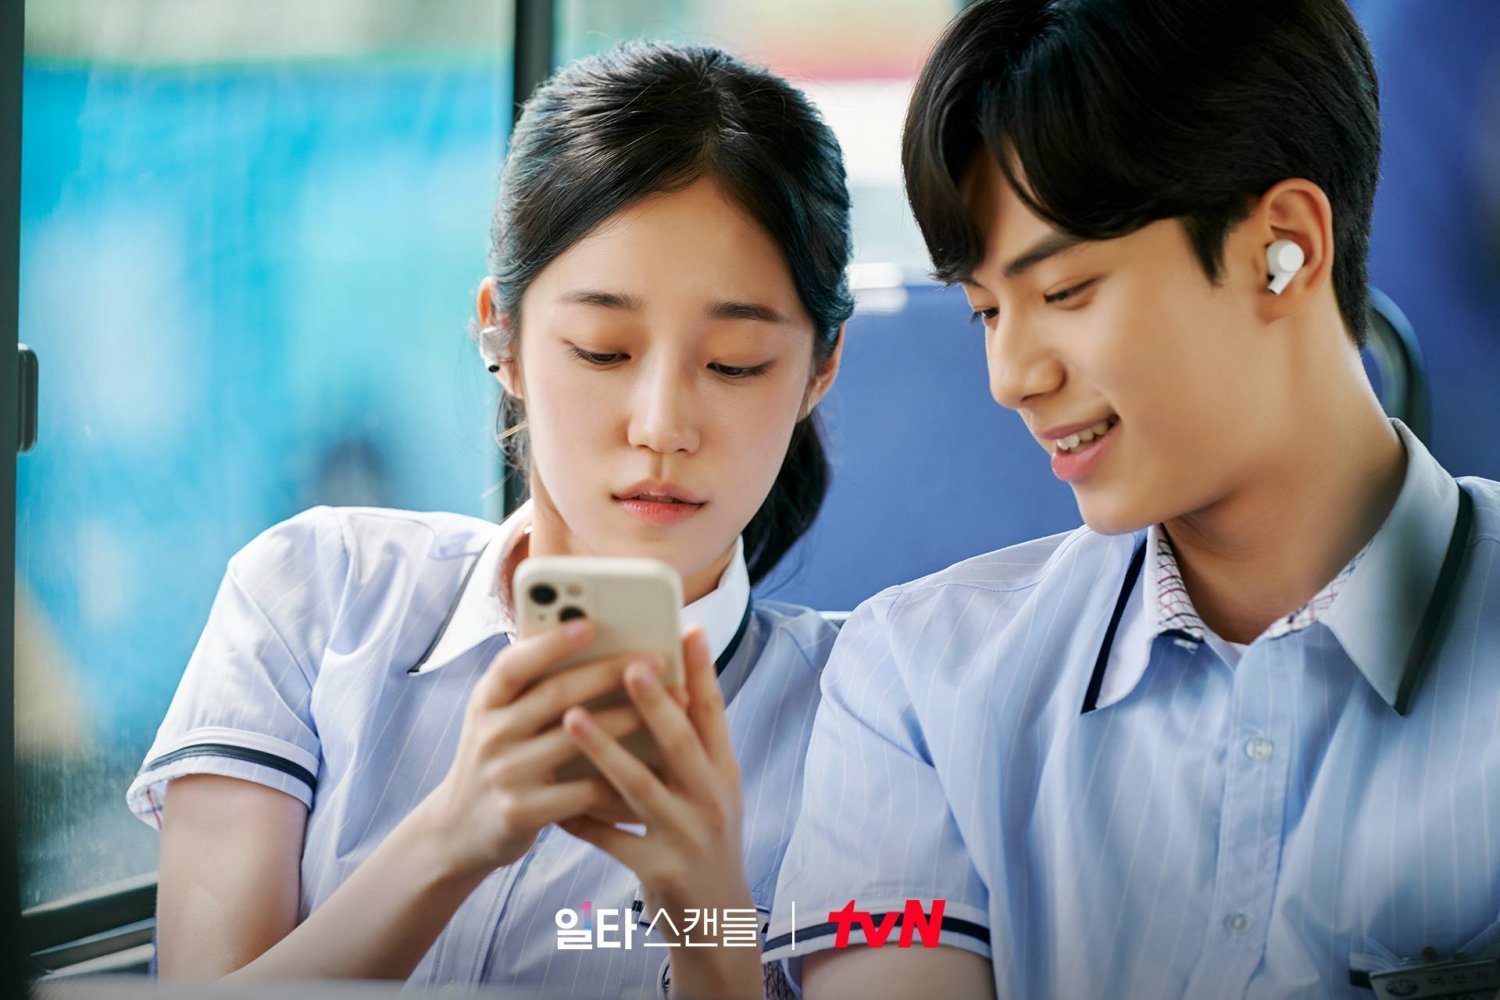 Mỹ nam Hàn cao gần 1,9m gây sốt trong phim ‘Khóa học yêu cấp tốc’ - Ảnh 8.